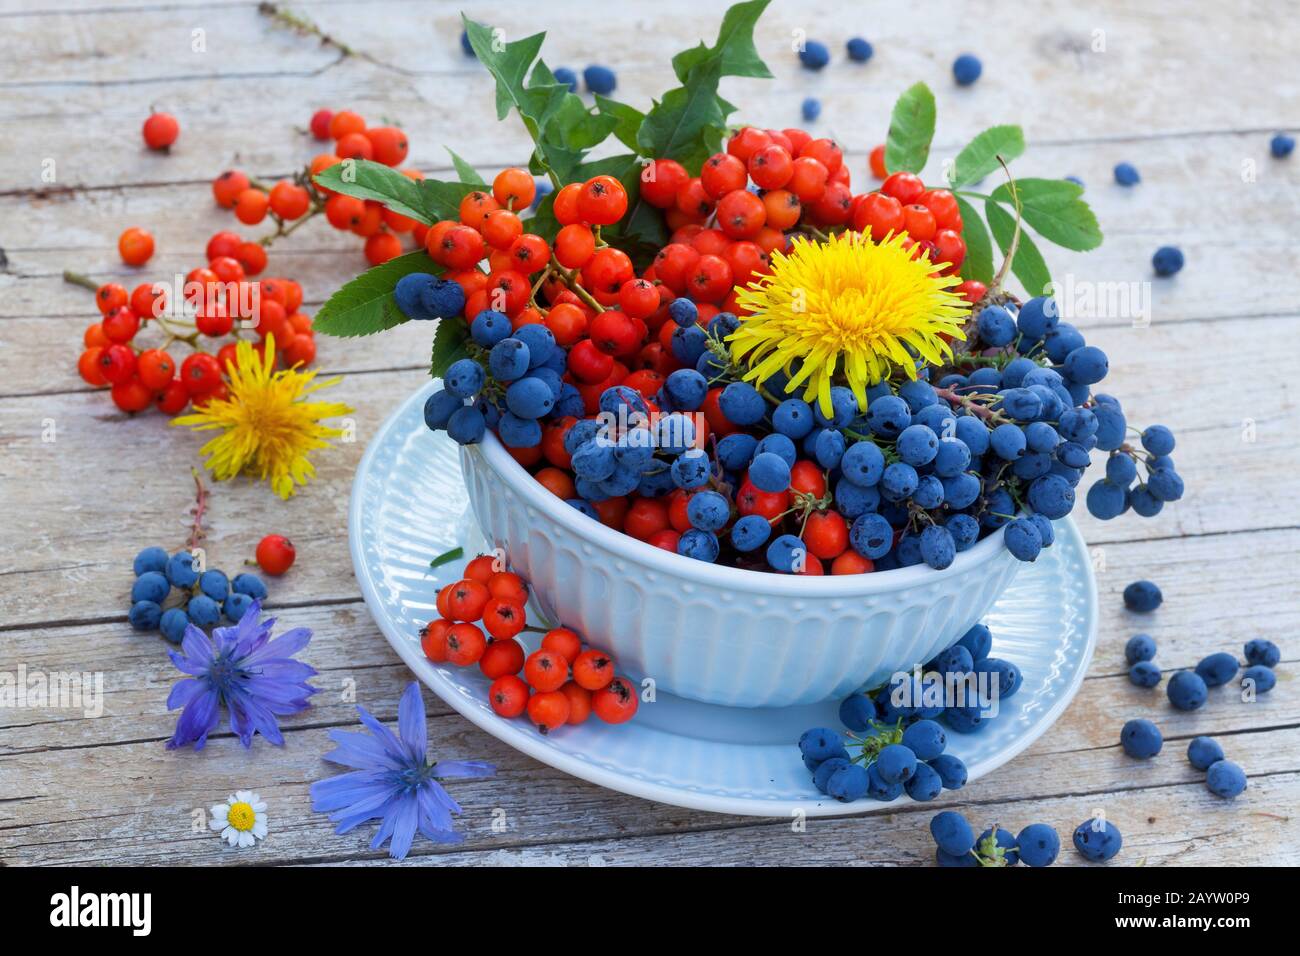 Bol avec raisins de montagne et baies d'arbre de rowan, décoratet avec fleurs de pissenlit et marins bleus, Allemagne Banque D'Images